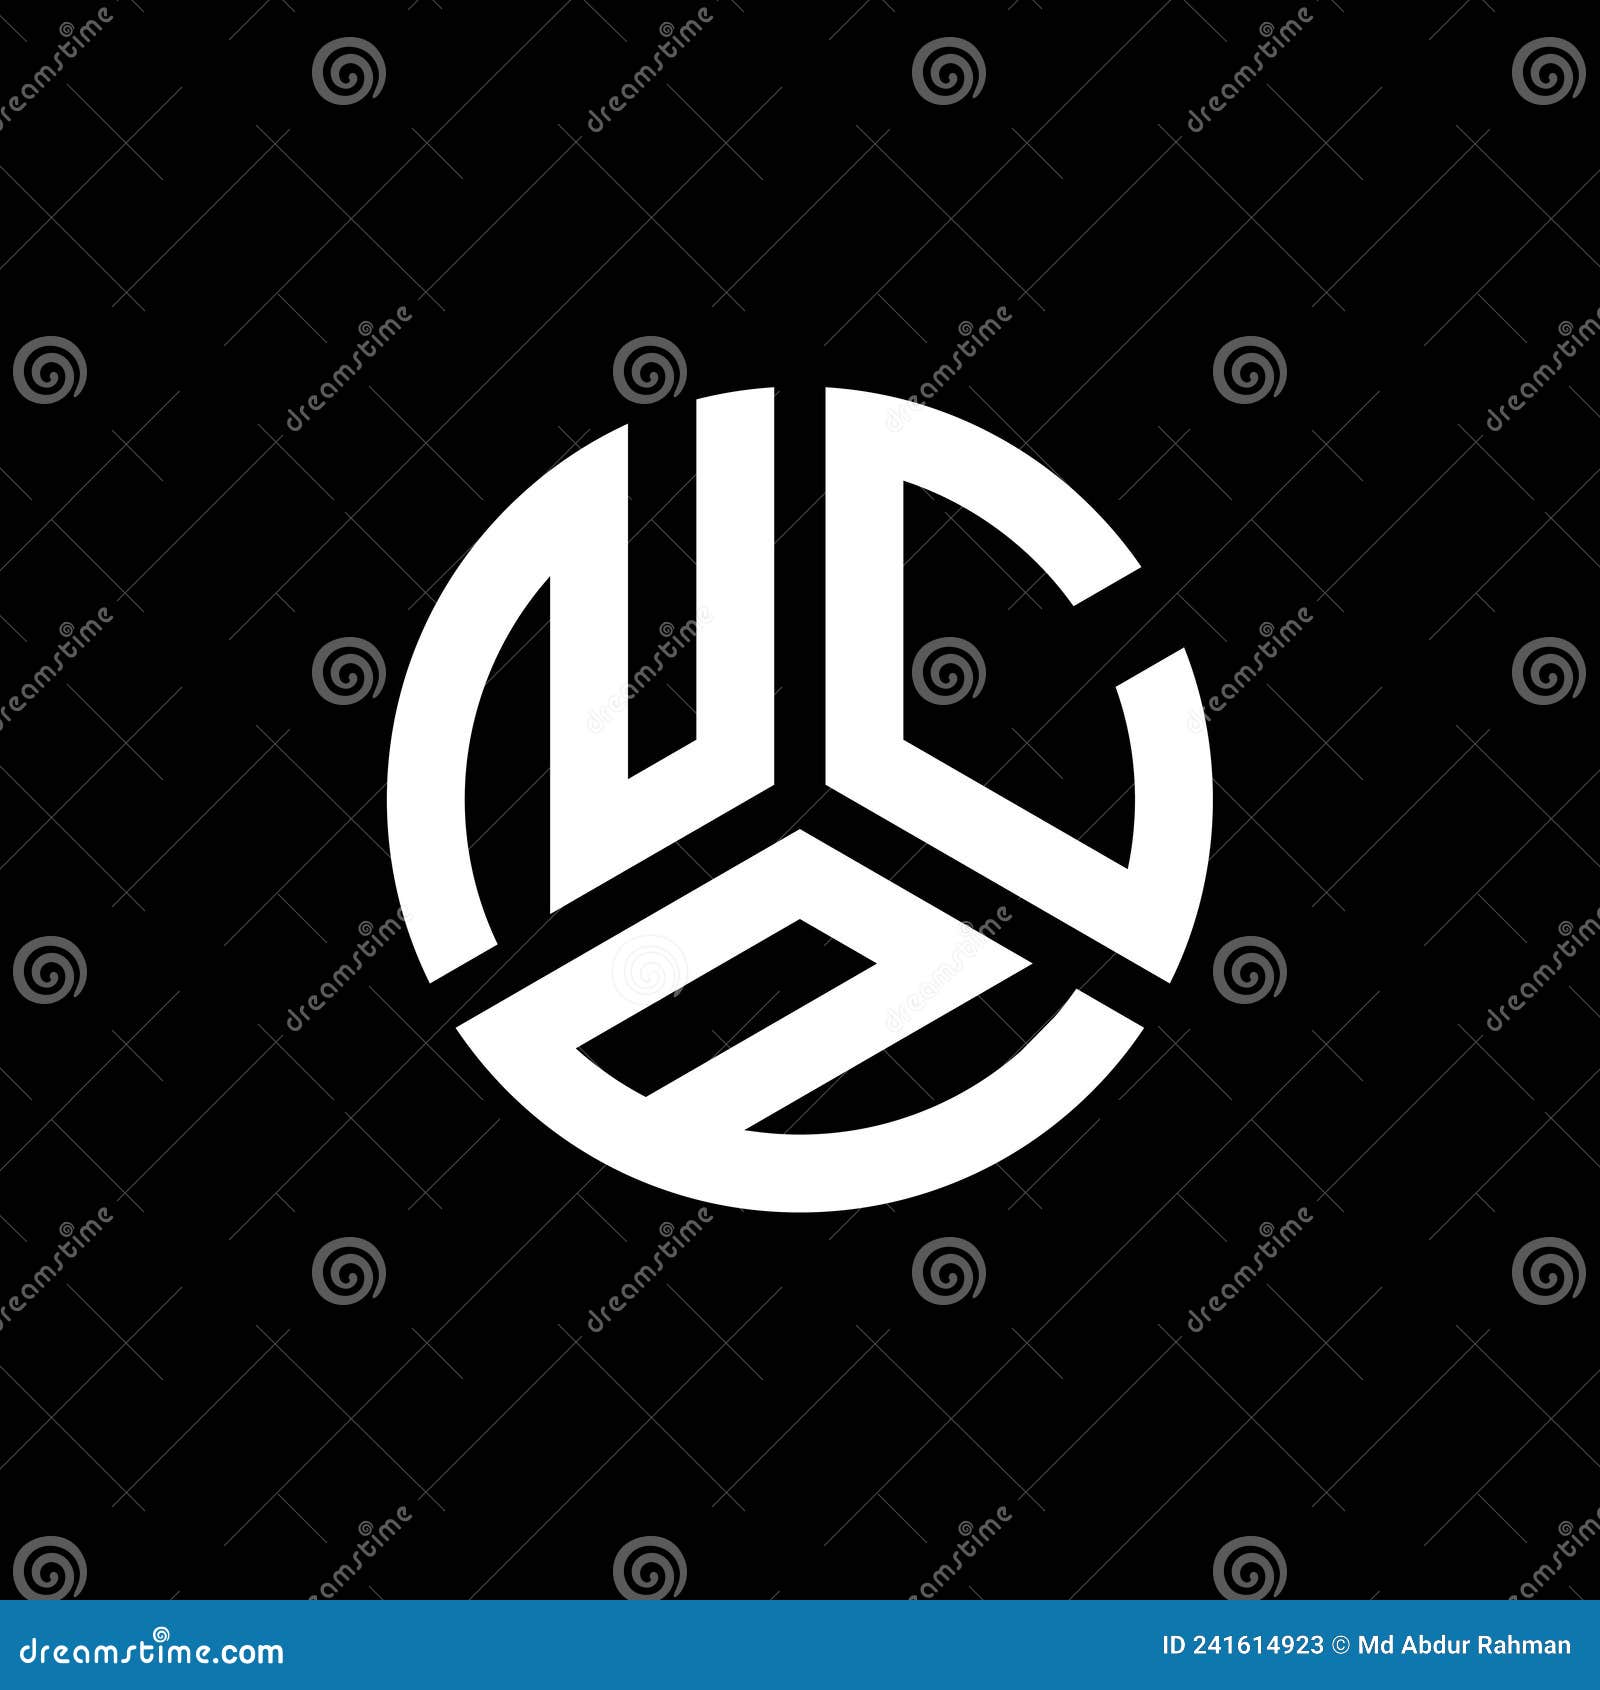 ncp letter logo  on black background. ncp creative initials letter logo concept. ncp letter 